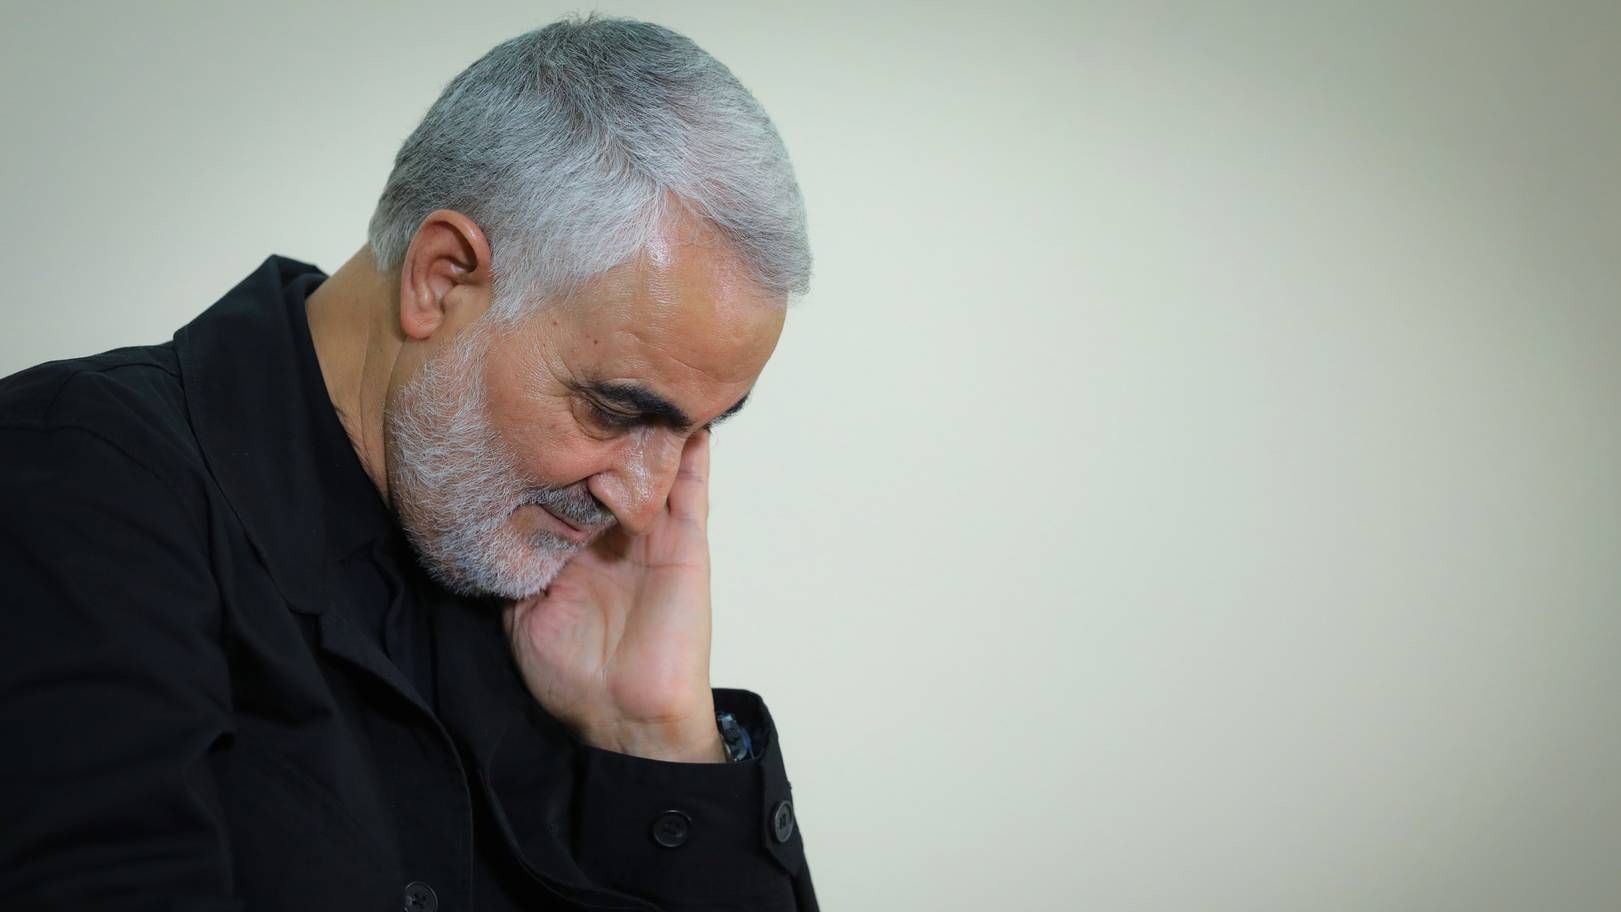 Փորձագետ. Իրանը բախվել է իսլամական հեղափոխության ակտուալության խնդրին